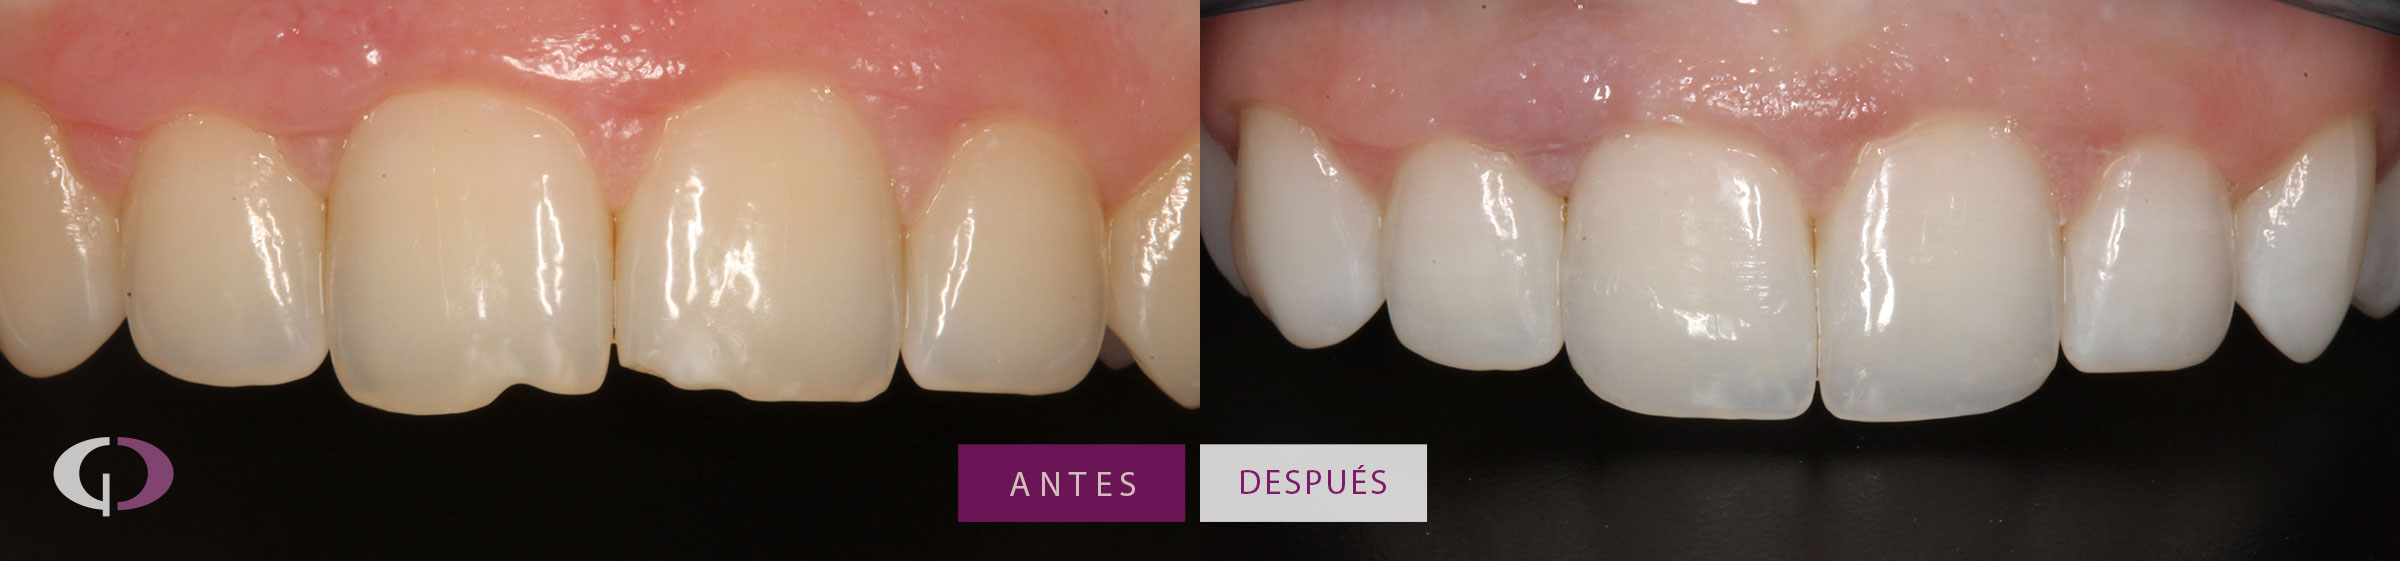 Reconstrucción dental composite